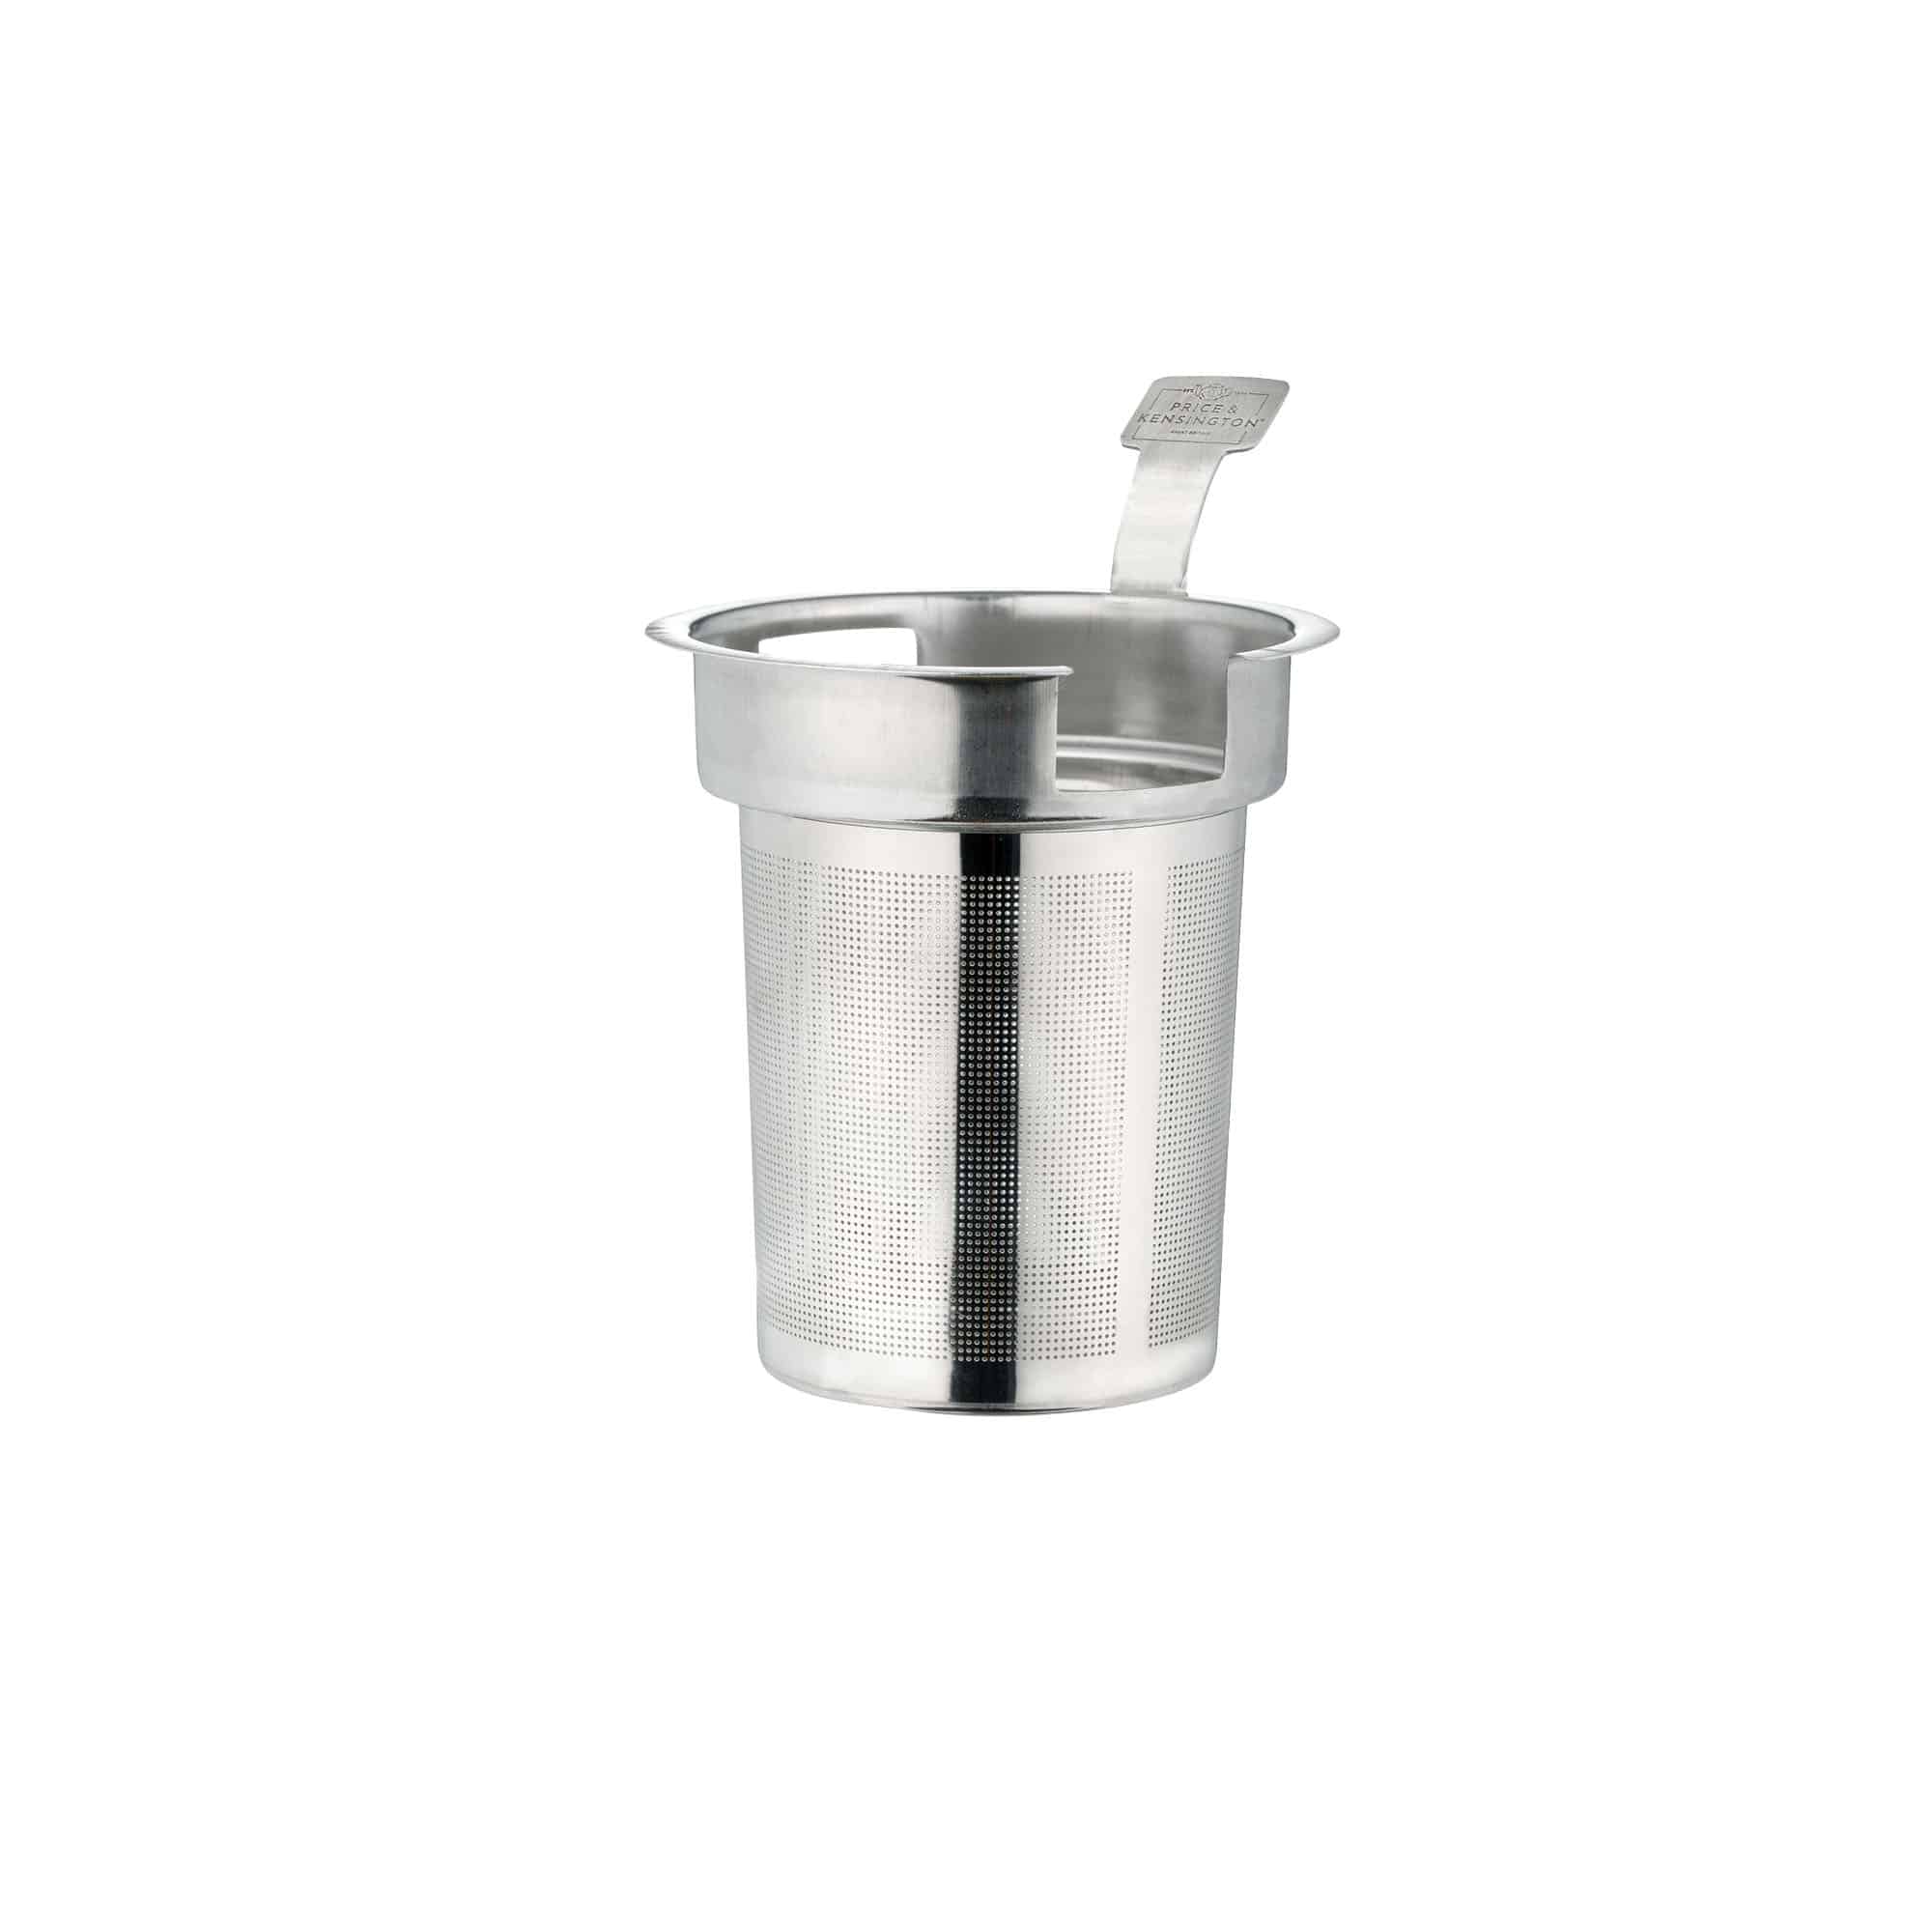 Price & Kensington Teapot Filter 2 Cup